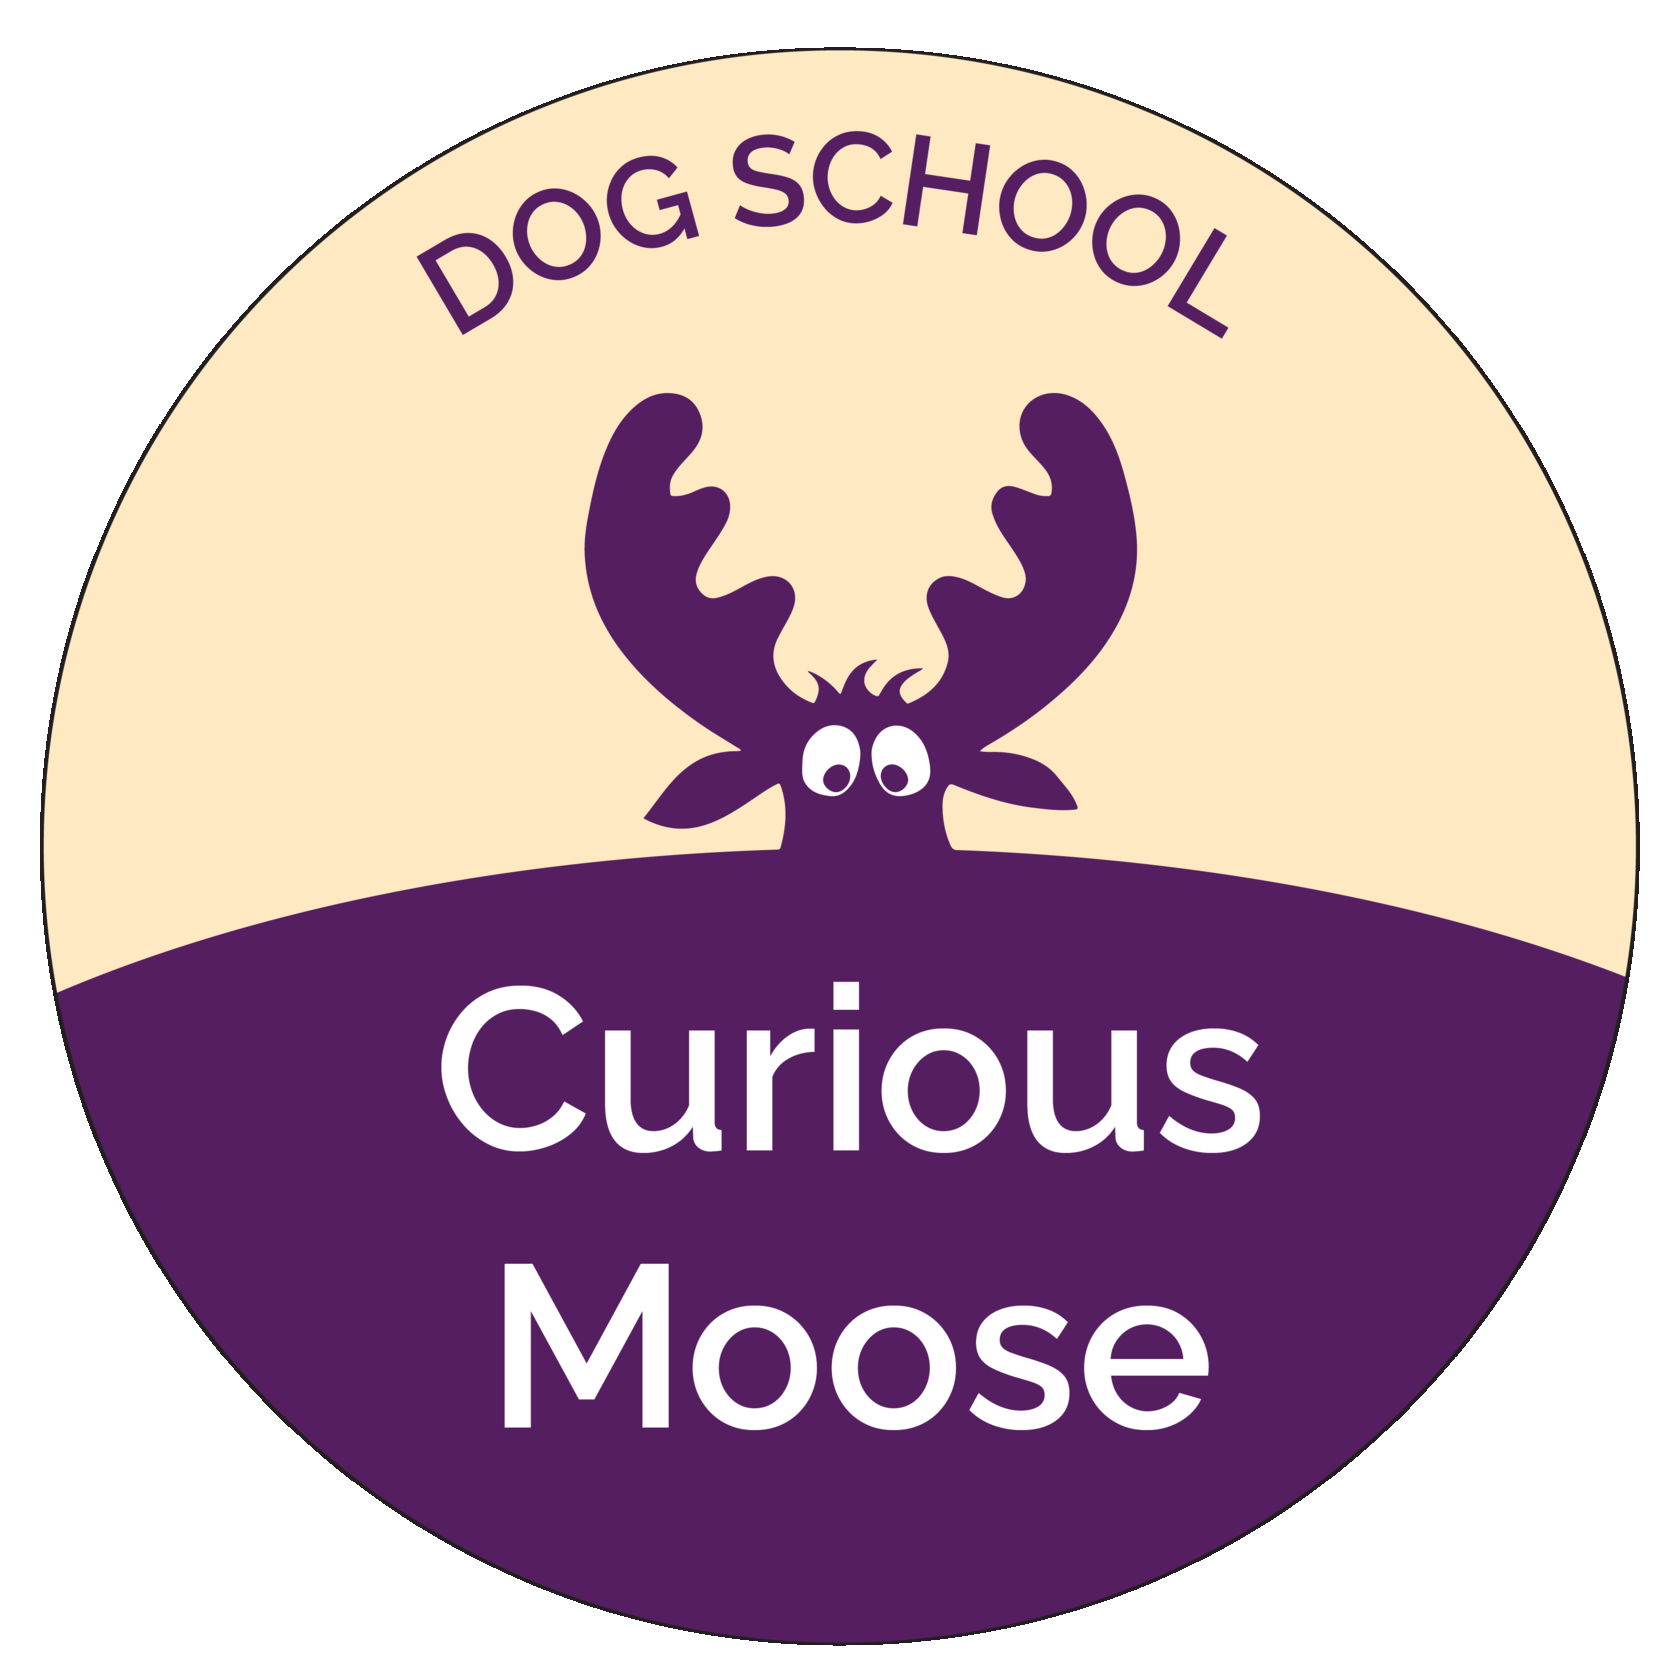 Curious moose, любопытный лось